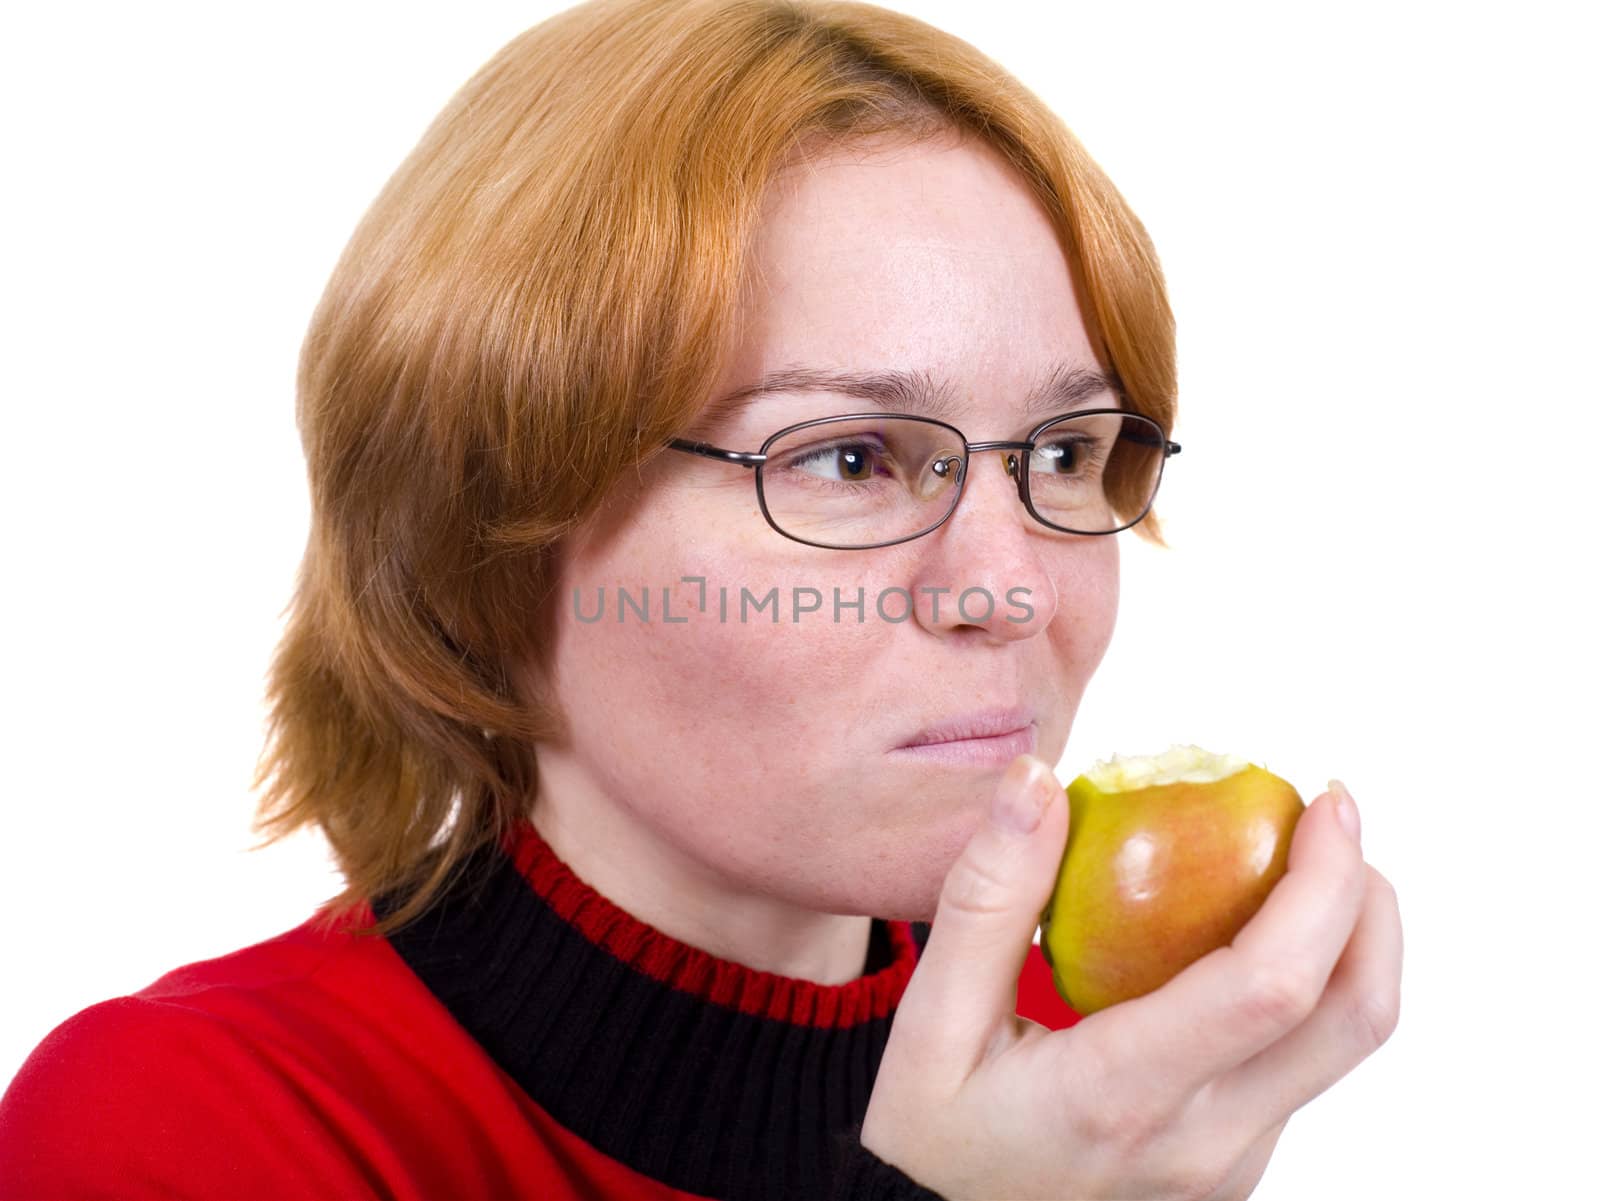 The girl eats an green apple by pzaxe